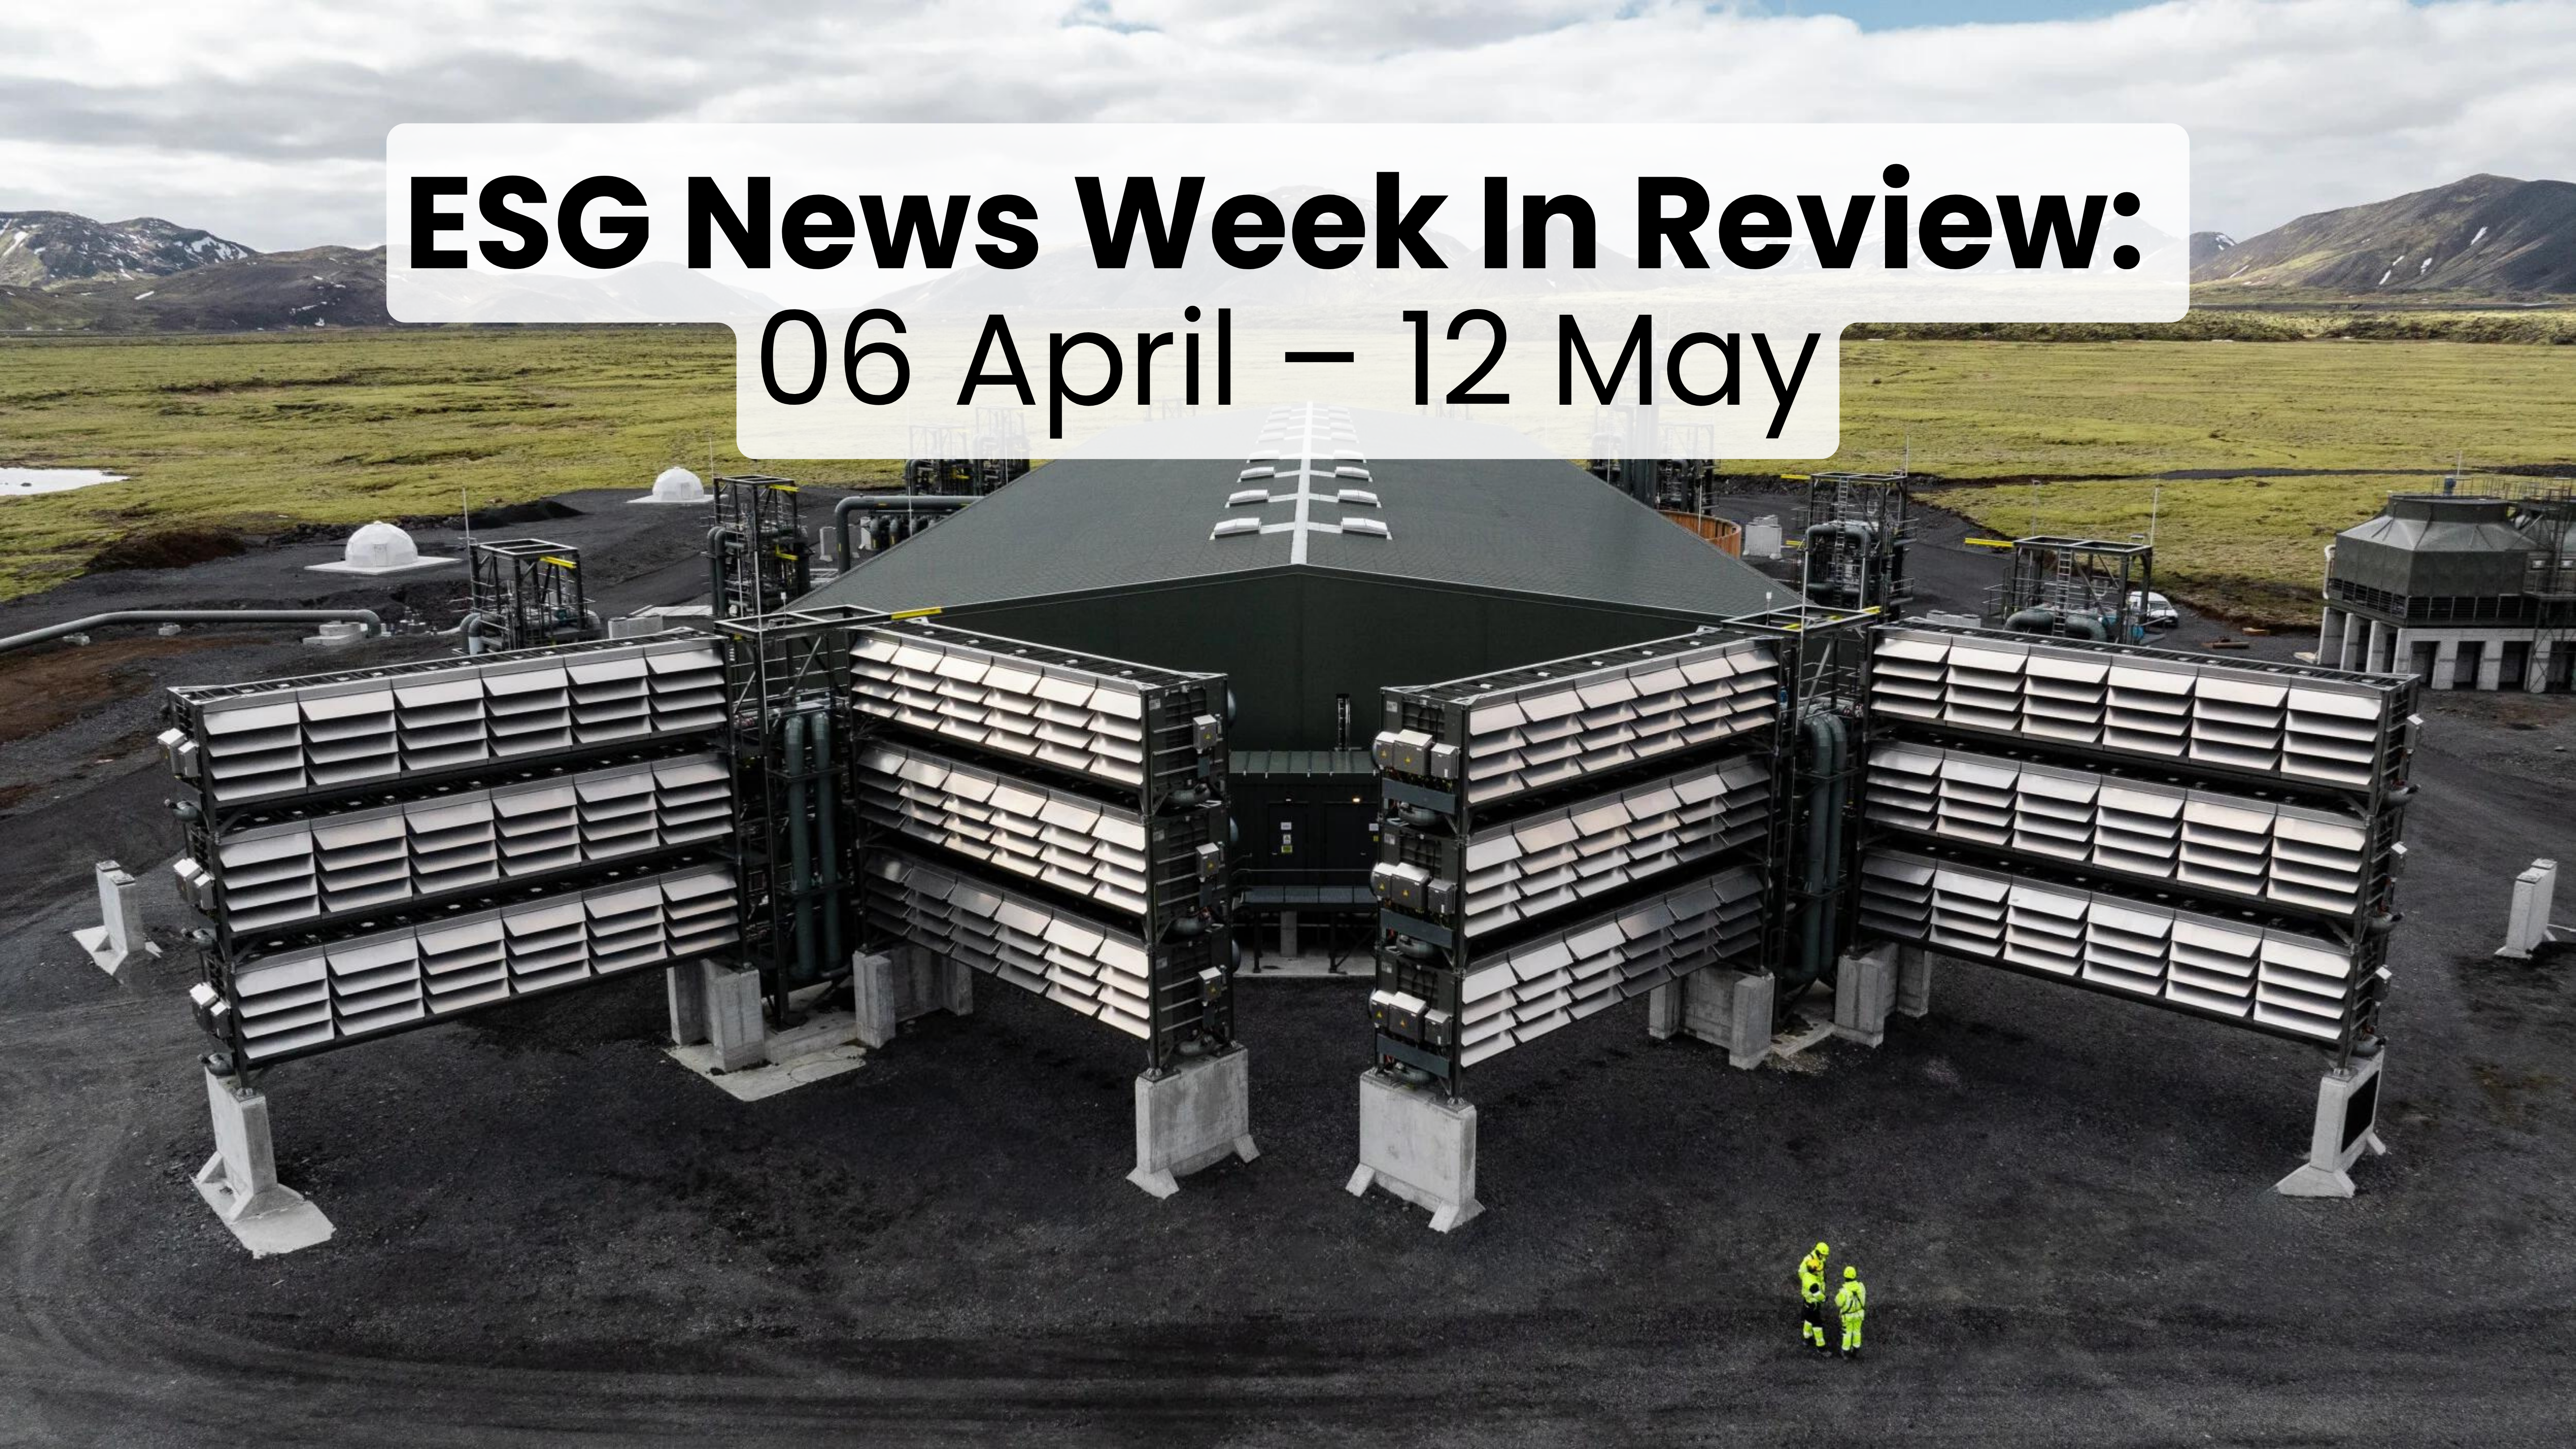 Revue de la semaine d'actualités ESG du 06 avril au 12 mai